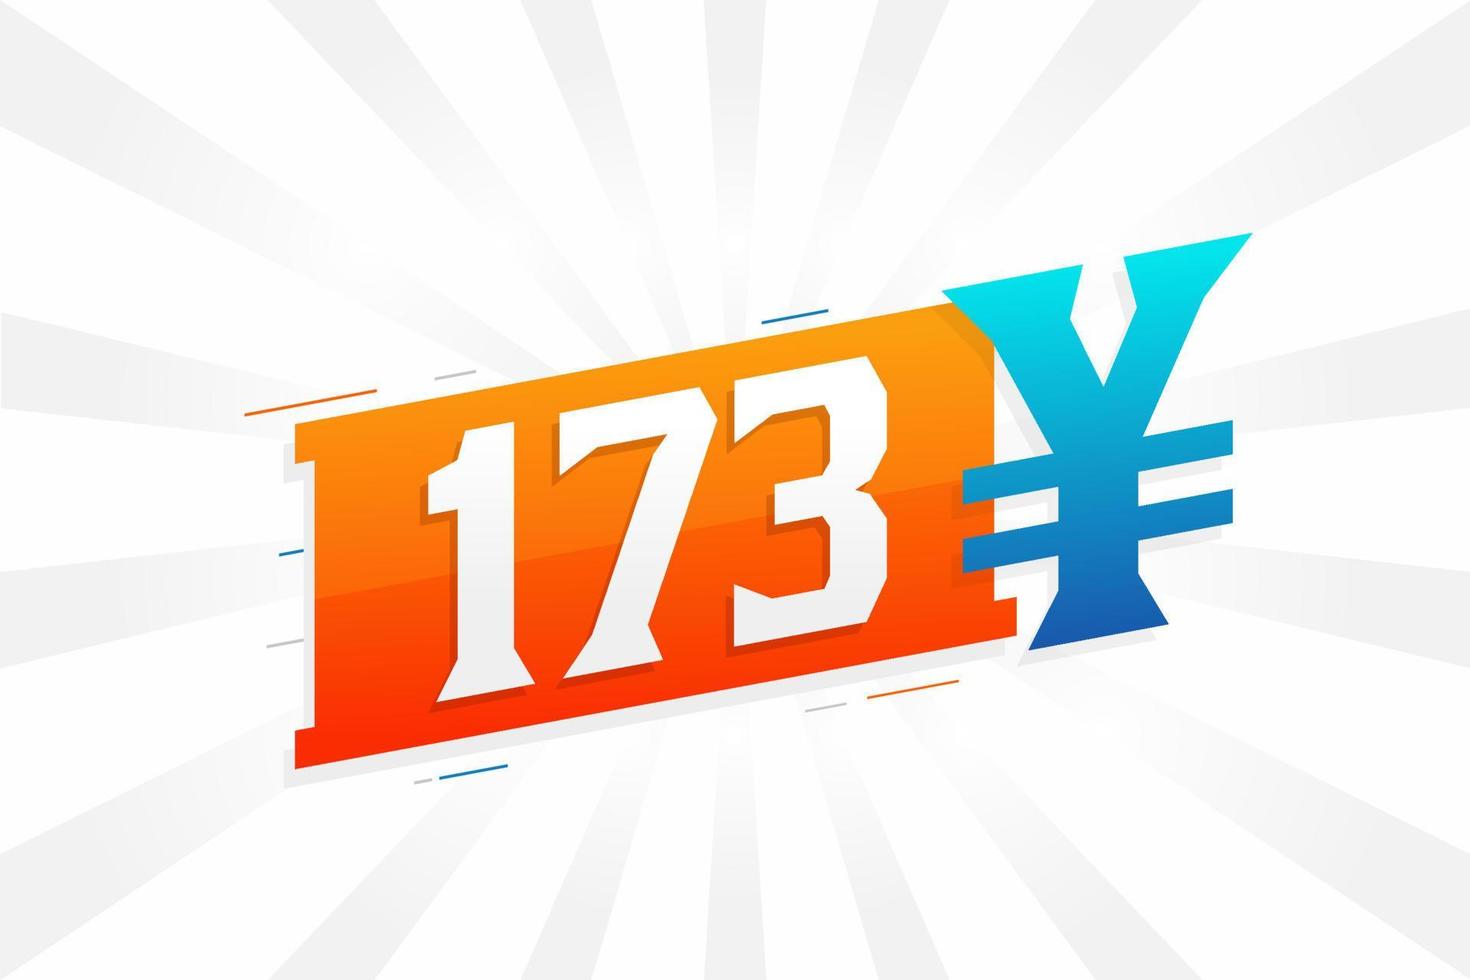 Símbolo de texto de vetor de moeda chinesa de 173 yuan. Vetor de estoque de dinheiro de moeda japonesa de 173 ienes